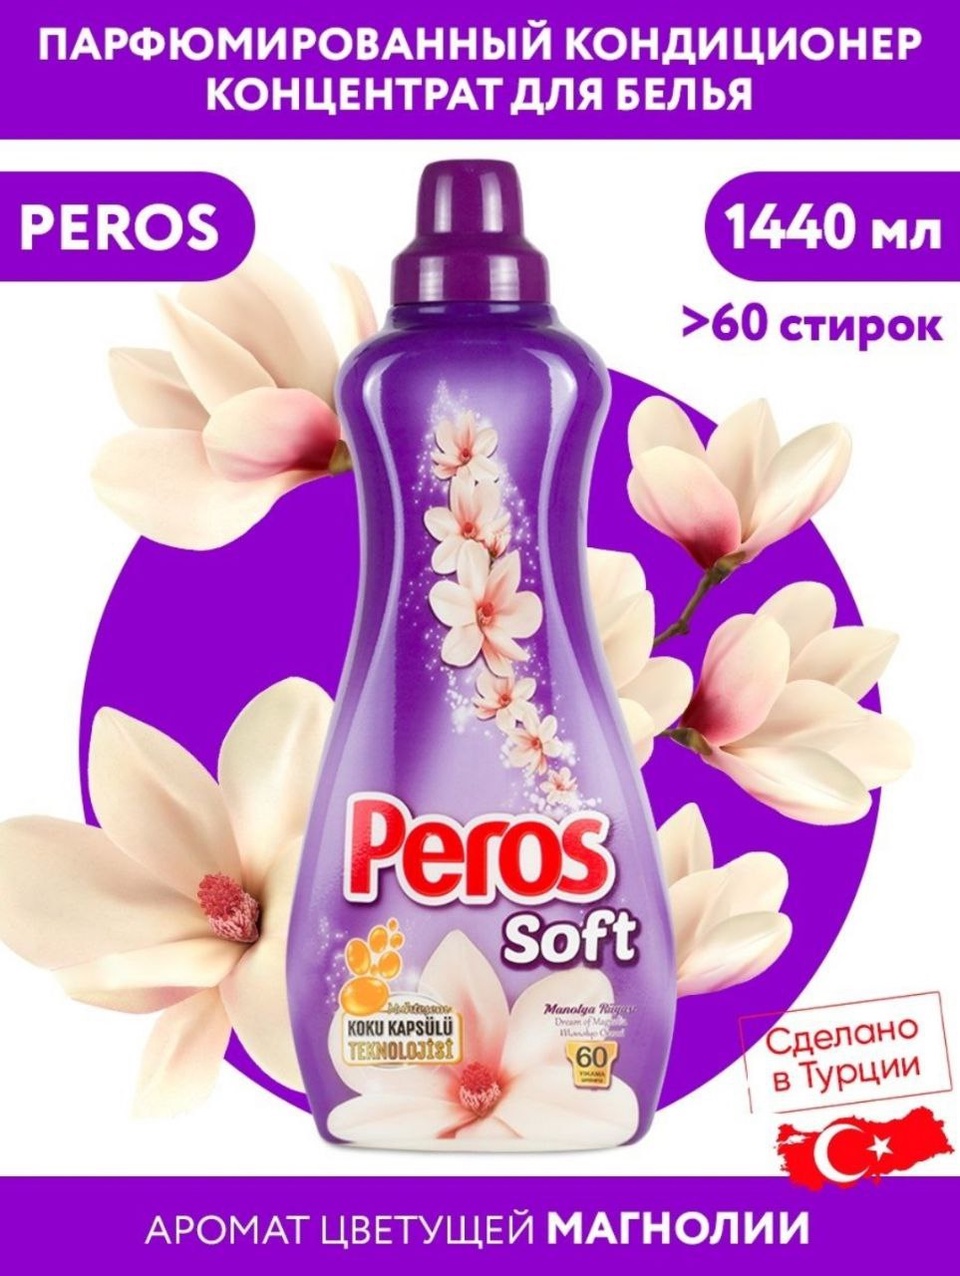 Концентрированный кондиционер для белья PEROS Перос в ассортименте, 1440 мл - 420 ₽, заказать онлайн.